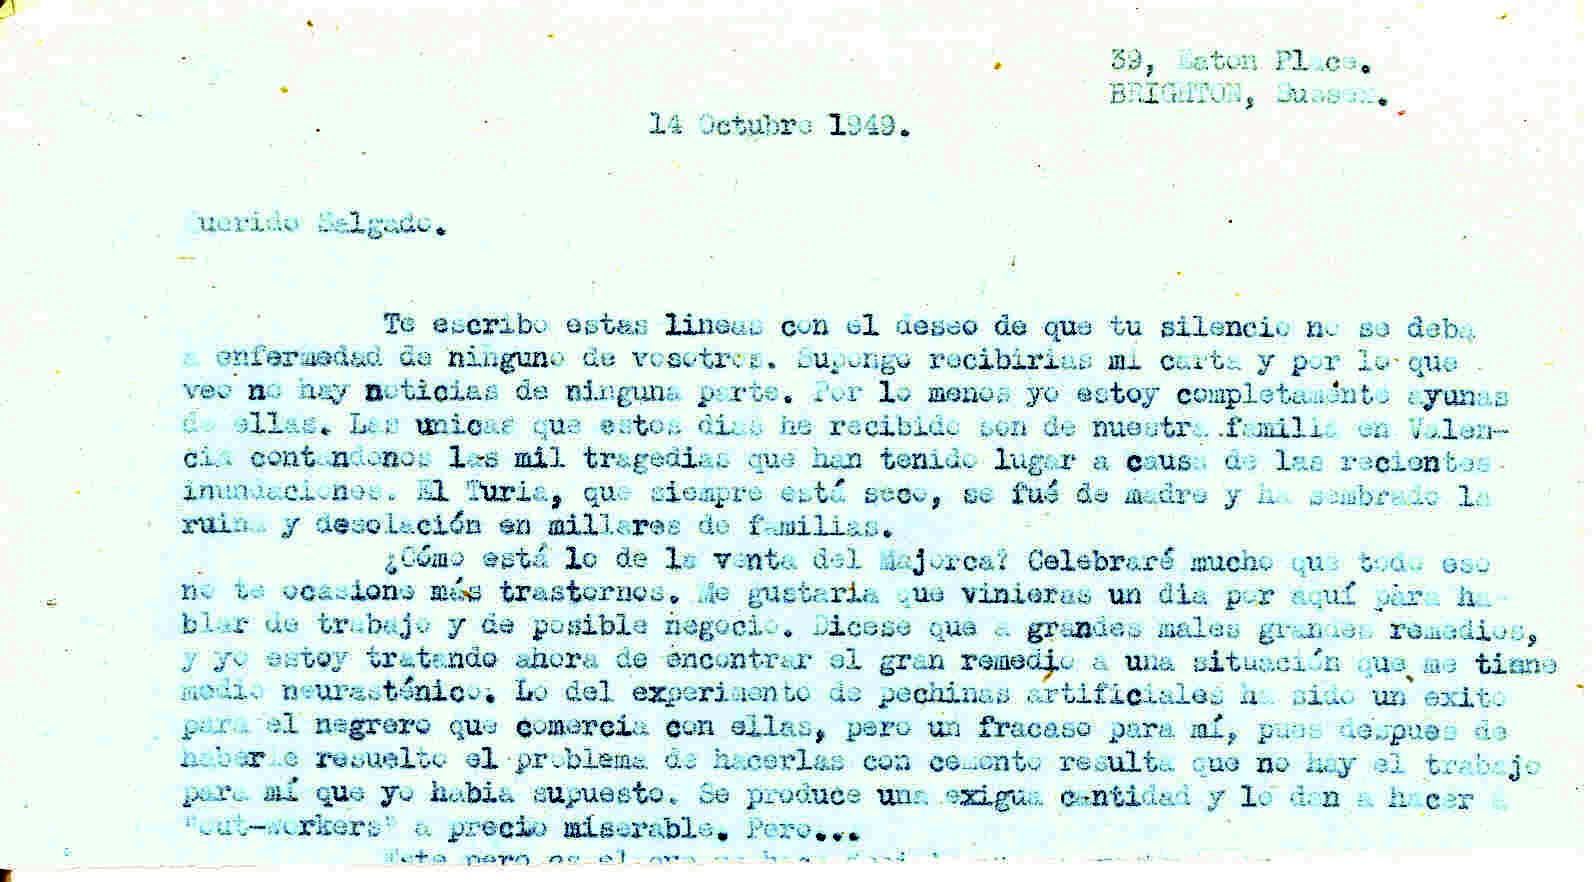 Carta a Manuel Salgado comunicando no tener noticias de ninguno de los compañeros,  preguntándole por la venta del Majorca y contándole cómo va lo del experimento de las pechinas artificiales